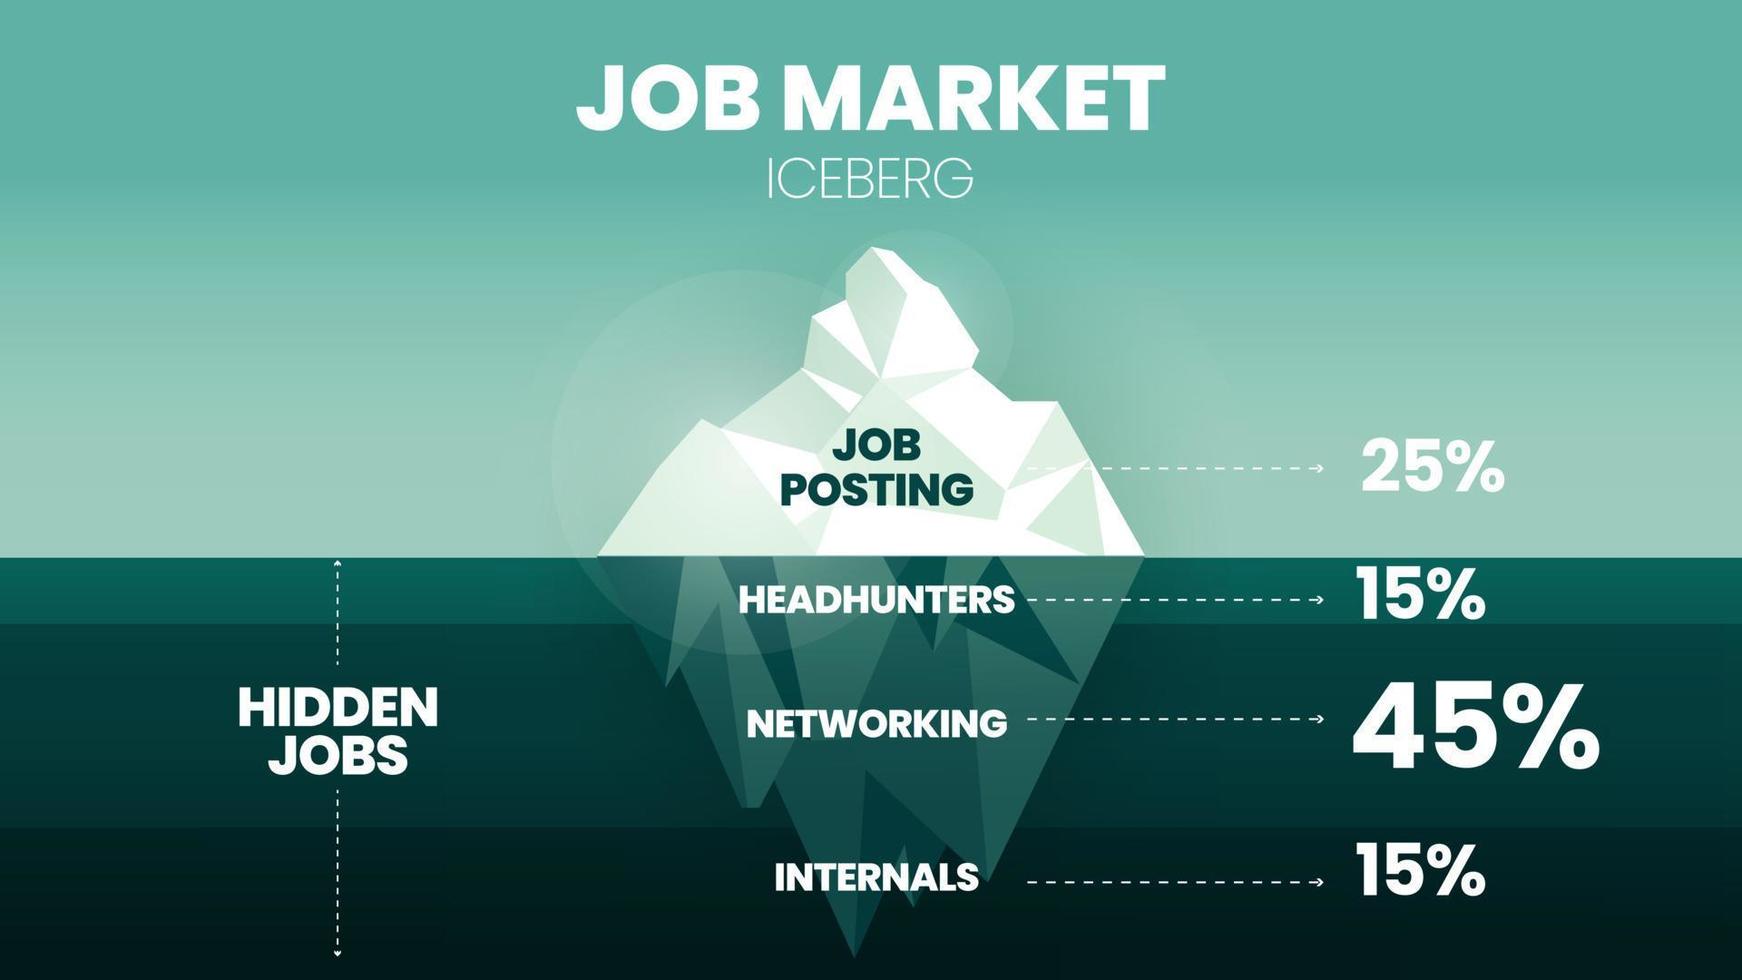 en vektor och illustration i en isbergsmodell på arbetsmarknaden har 25 procent av inlägg på spetsen, under vattnet har headhunting, nätverk och interna delar för hr kostnaden för investeringen att överväga